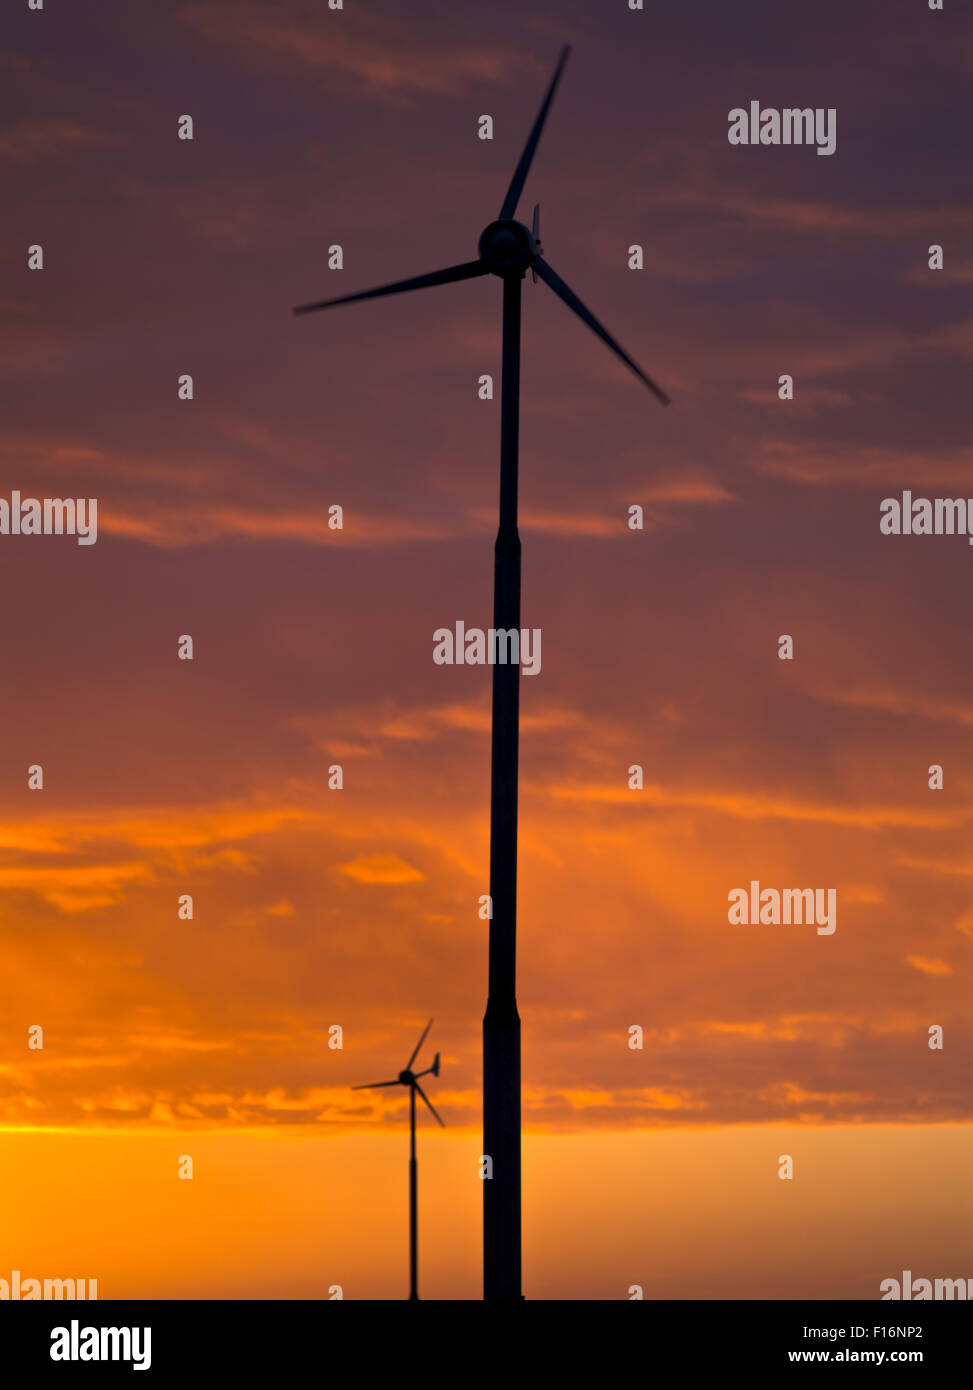 dh ÉOLIENNE Royaume-Uni Sunset éolienne silhouette soleil éolienne éolienne éolienne royaume-Uni éolienne éolienne éoliennes ciel set Banque D'Images